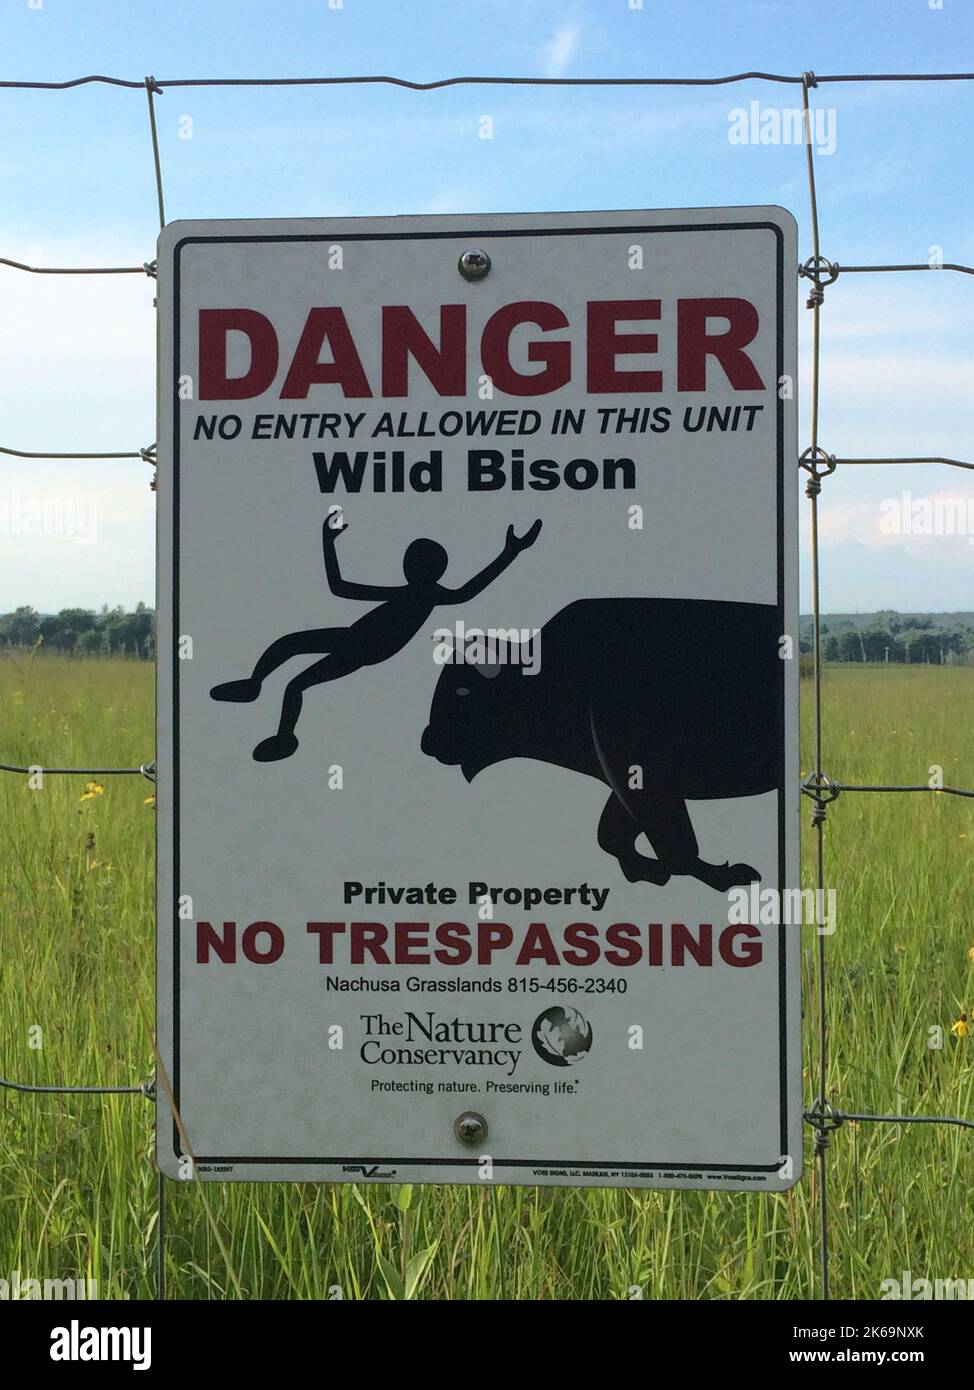 Des panneaux d'avertissement sur les bisons sont postés sur les clôtures entourant l'enclos de bisons à Nachusa Gasslands nature Conservancy, dans les comtés de Lee et d'Ogle, en Illinois Banque D'Images